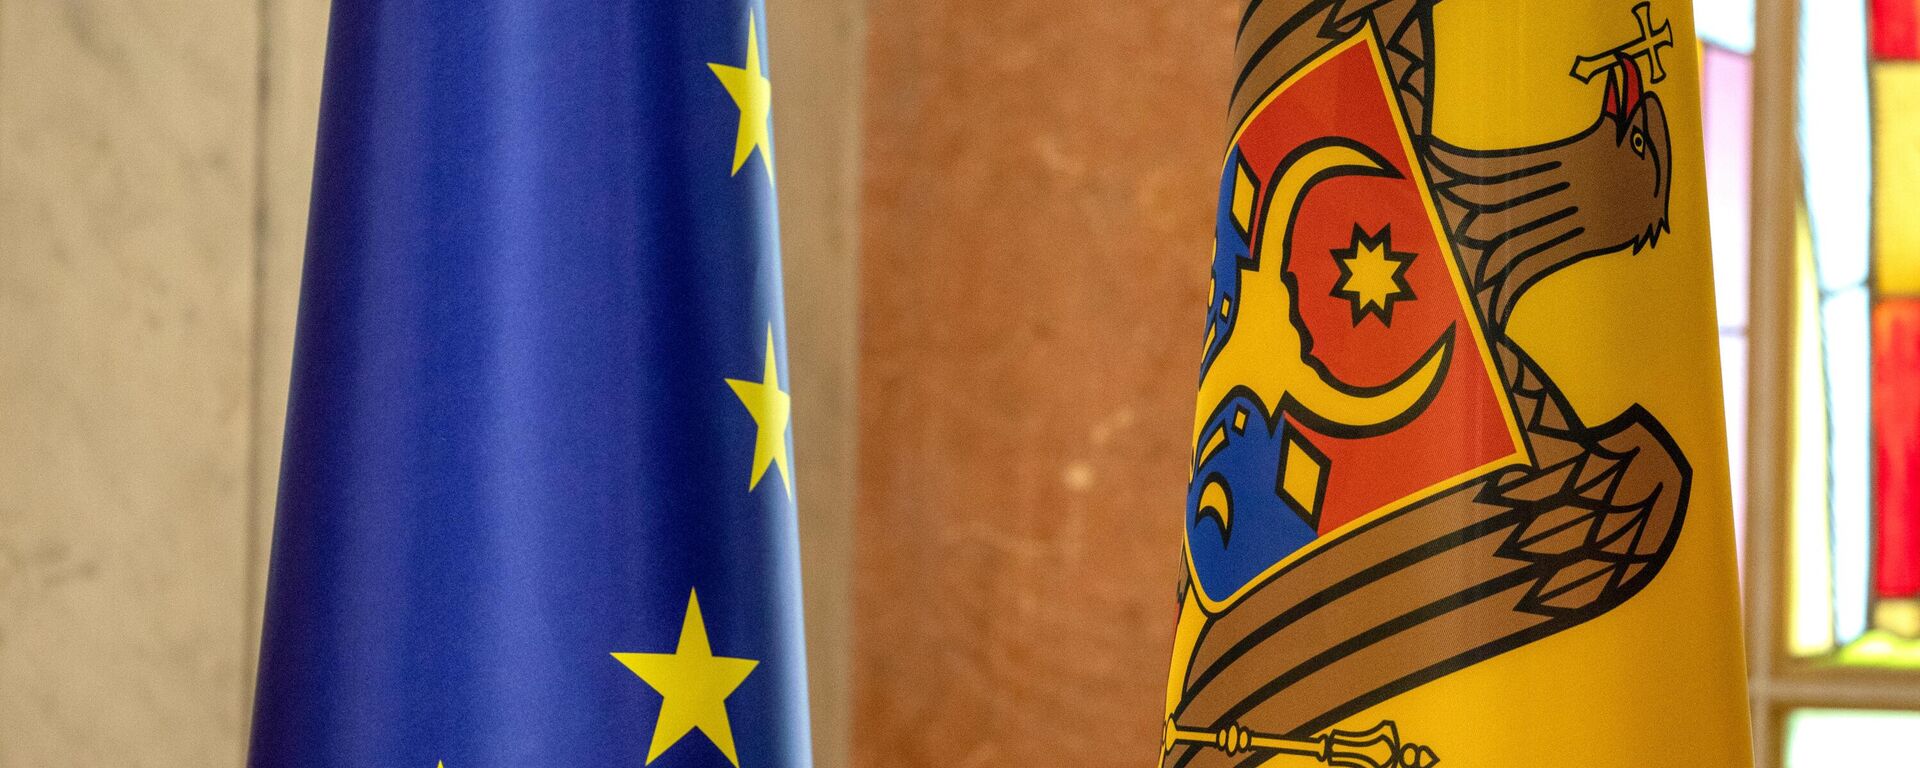 Bandeiras nacionais da Moldávia e da União Europeia em uma coletiva em Chisinau da presidente moldava Maia Sandu sobre a concessão à Moldávia do status de país candidato ao ingresso na União Europeia  - Sputnik Brasil, 1920, 09.07.2022